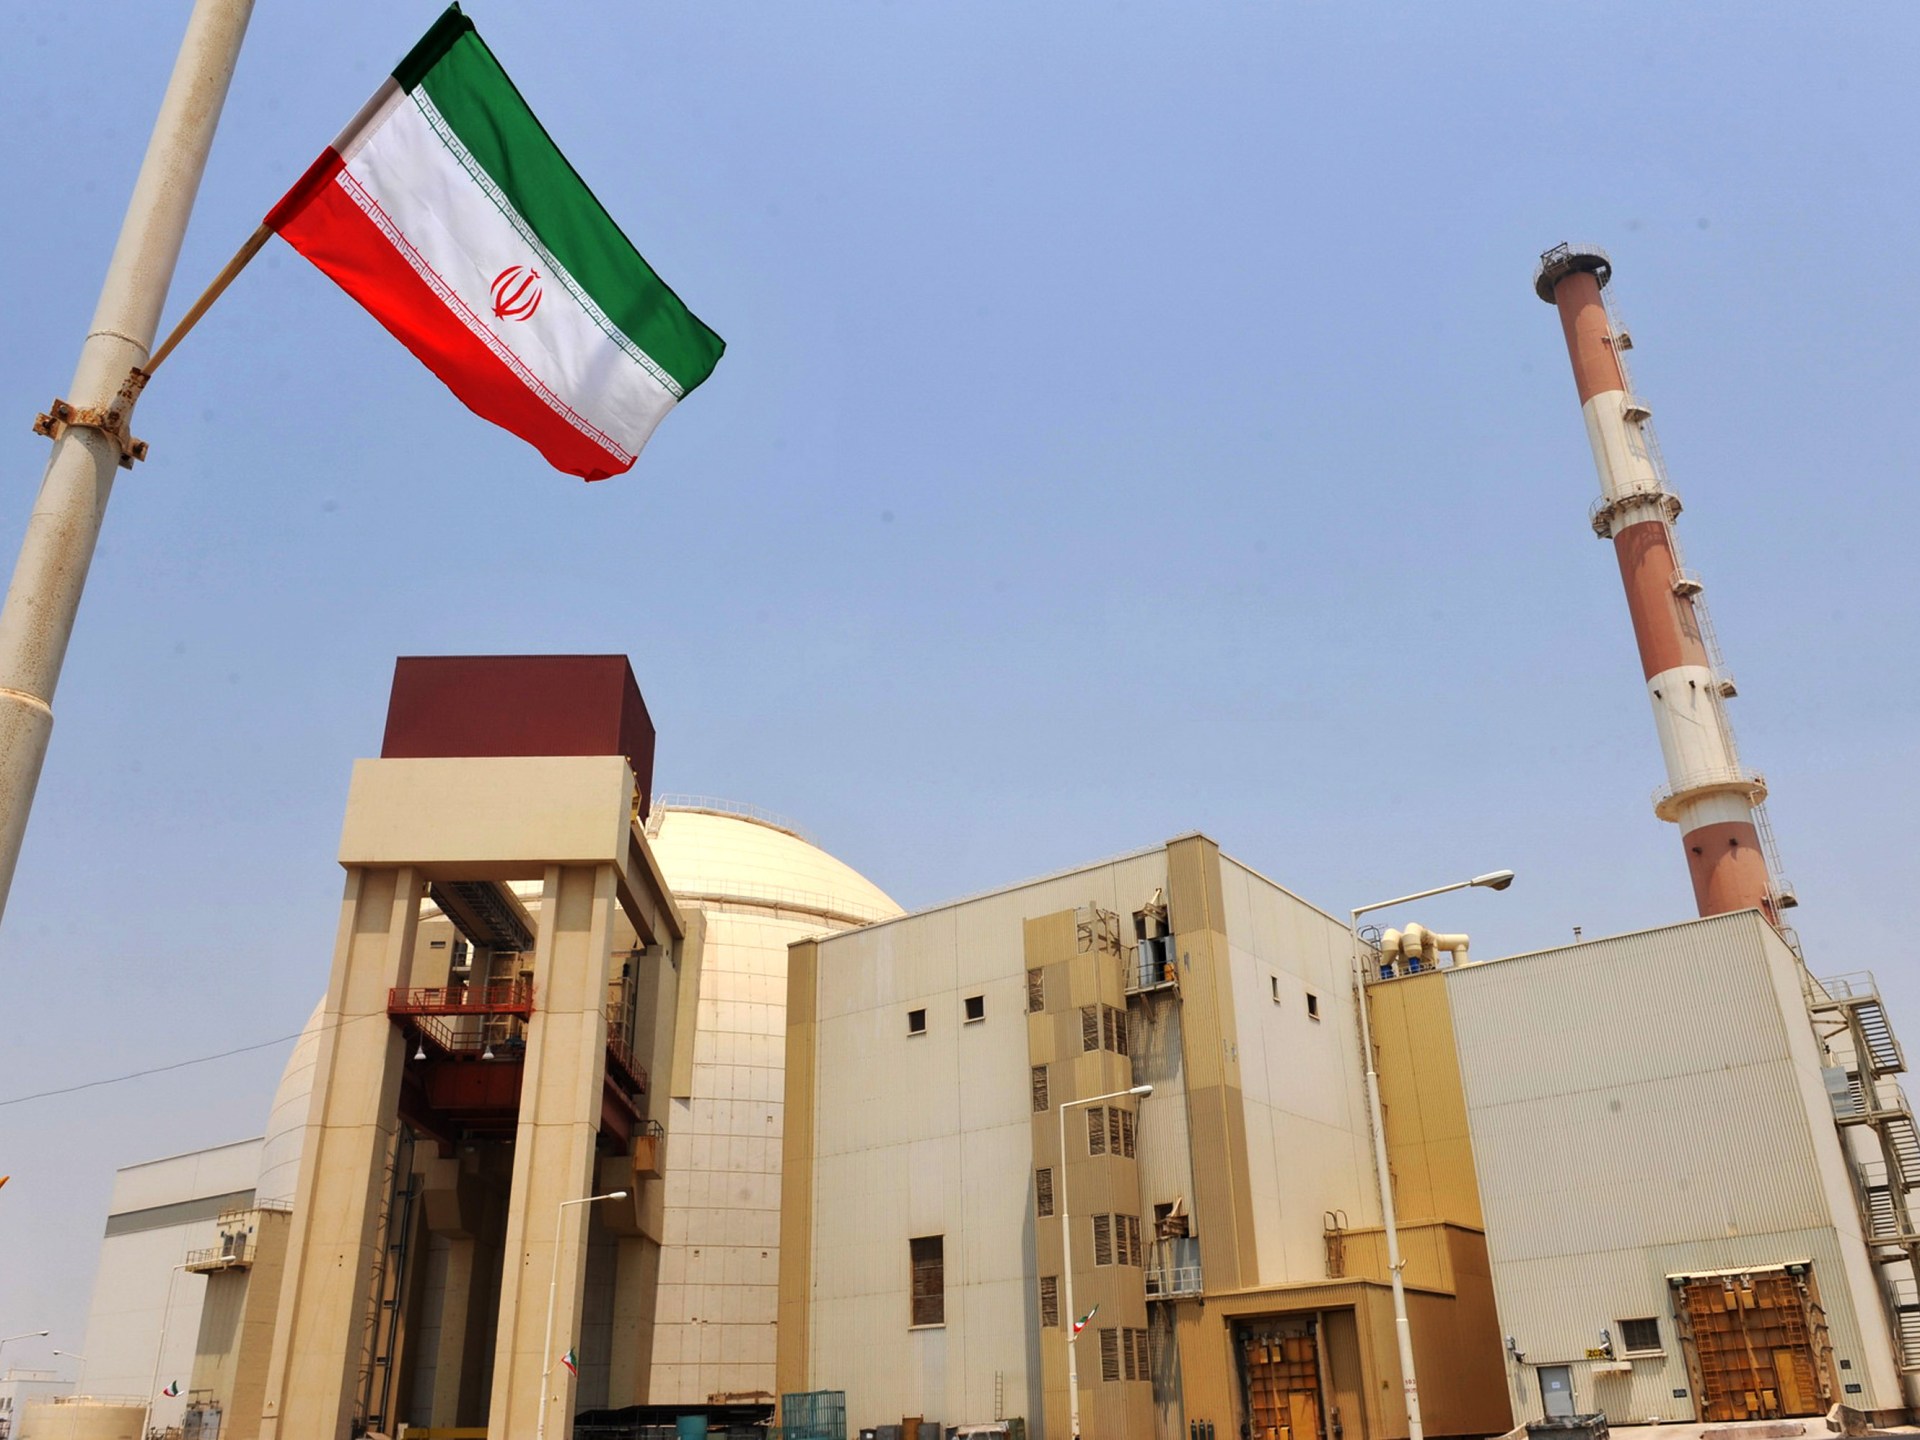 Di mana posisi kesepakatan nuklir Iran sekarang?  |  Berita Energi Nuklir